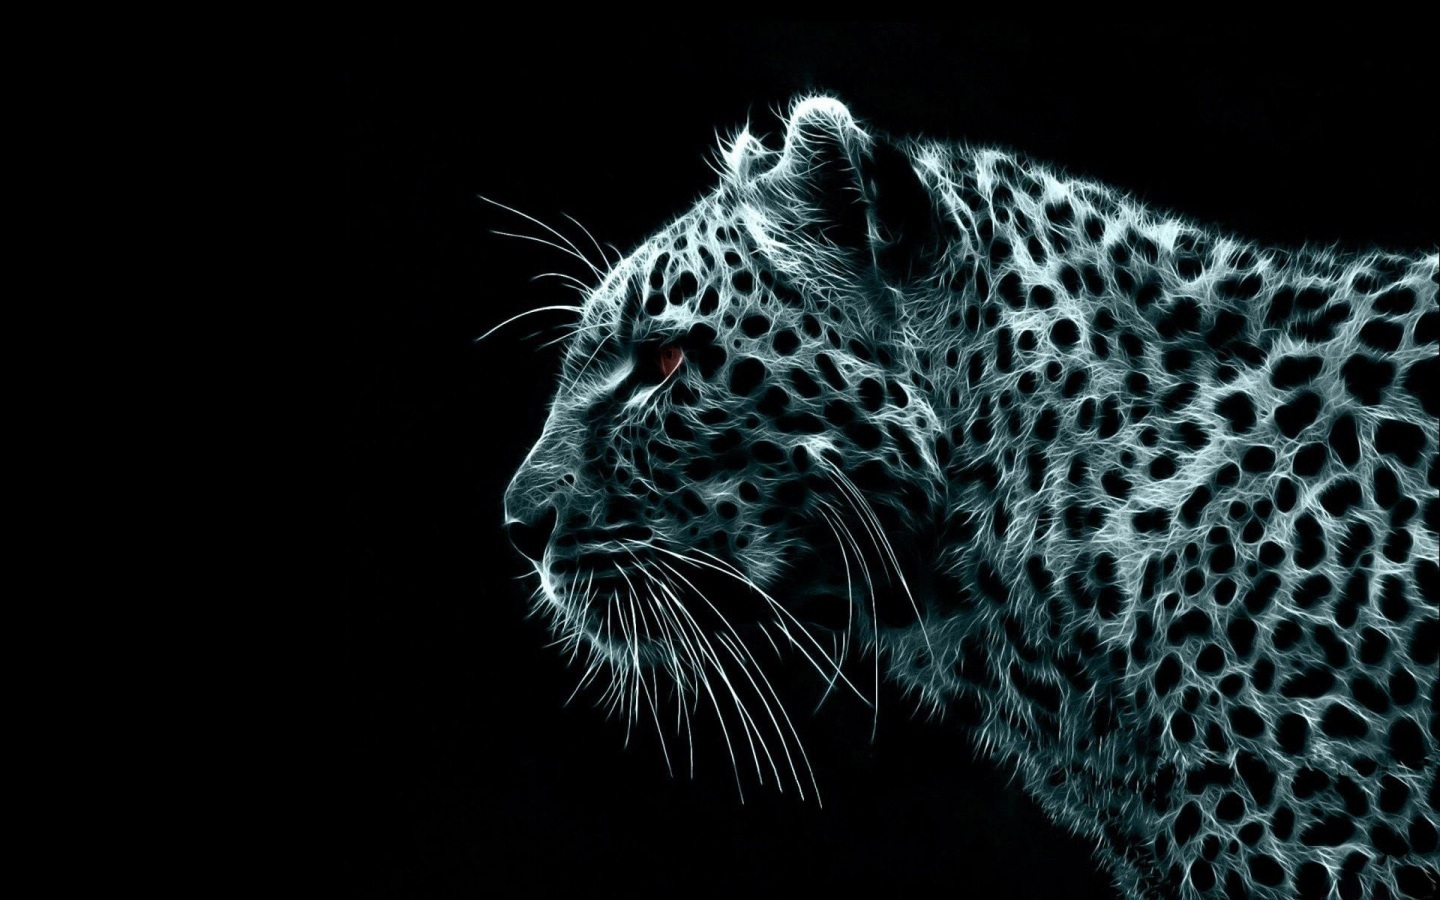 Leopard Snow Mac Papel De Parede Cool Background Puters